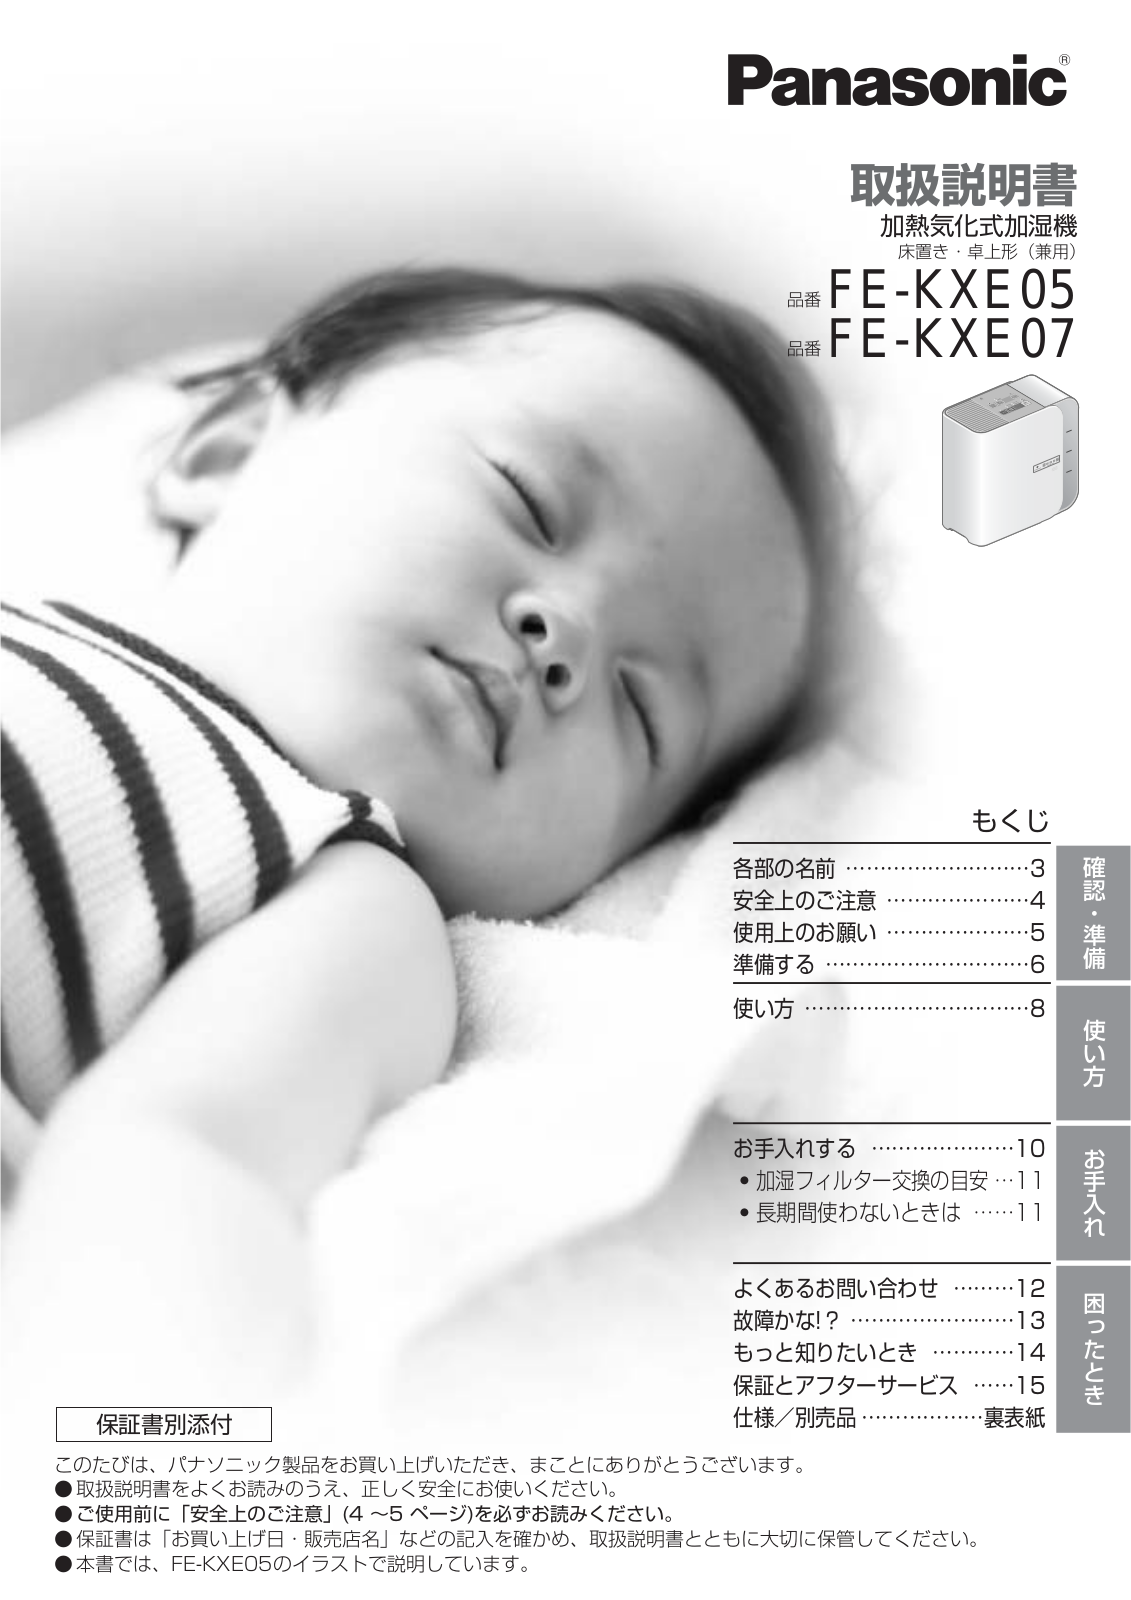 Panasonic FE-KXE05, FE-KXE07 User Manual